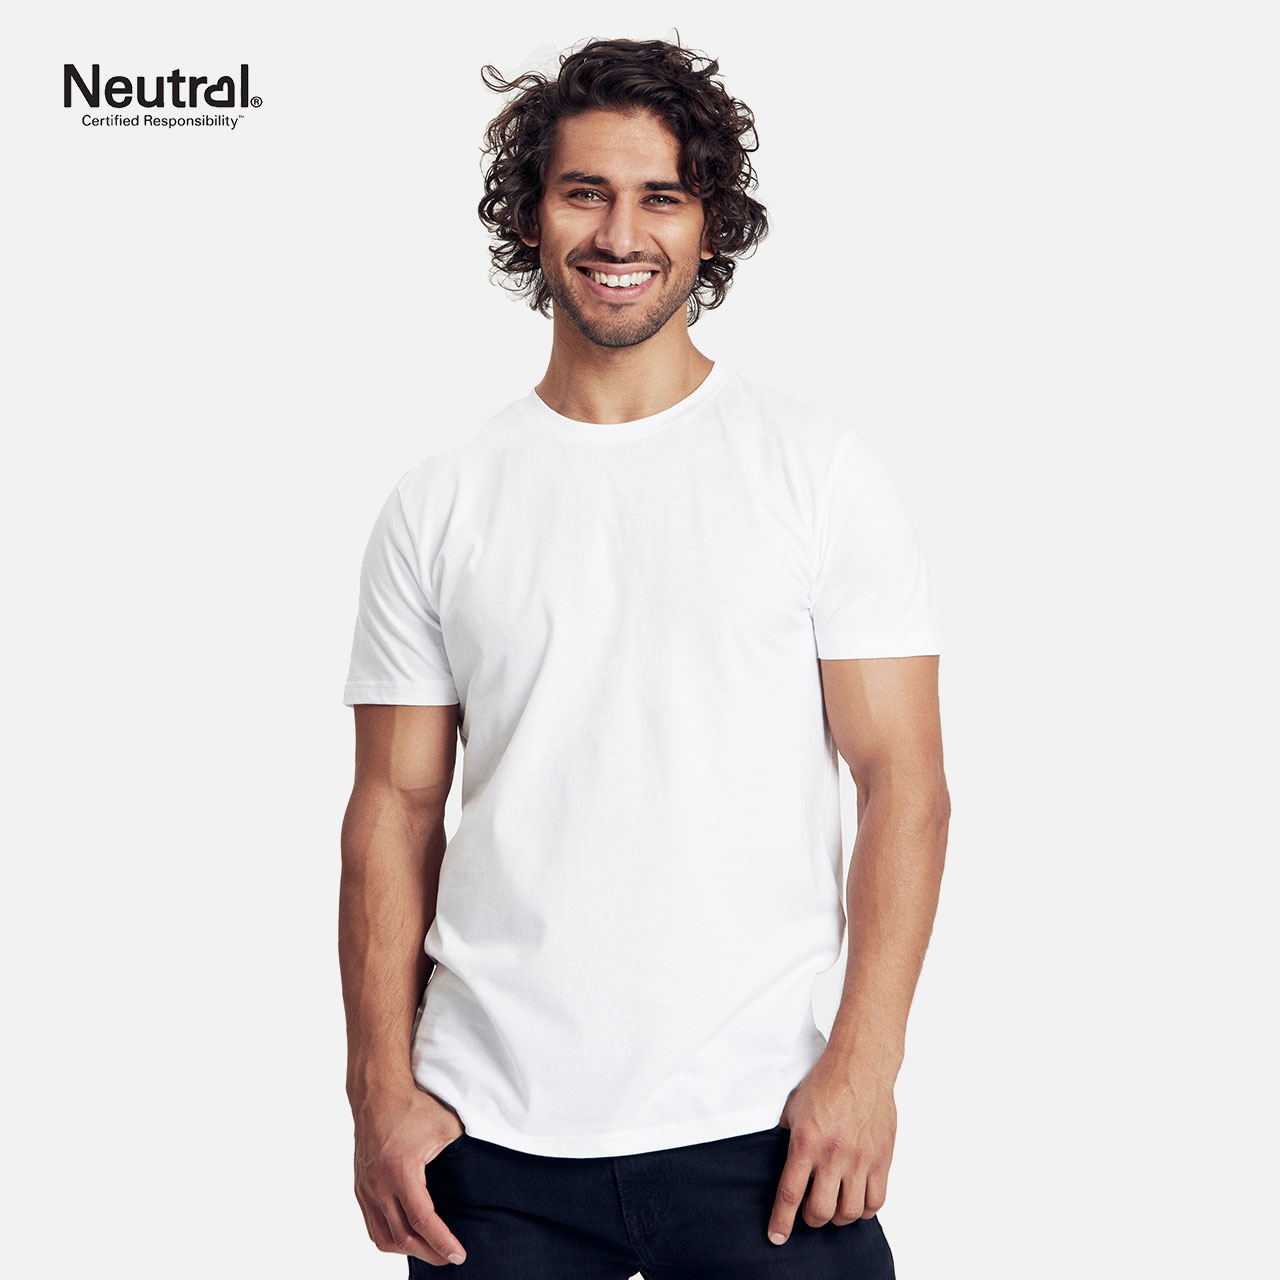 Doppelpack Neutral® Mens Fit T-Shirt - Bio-Baumwolle Weiss L Weiß